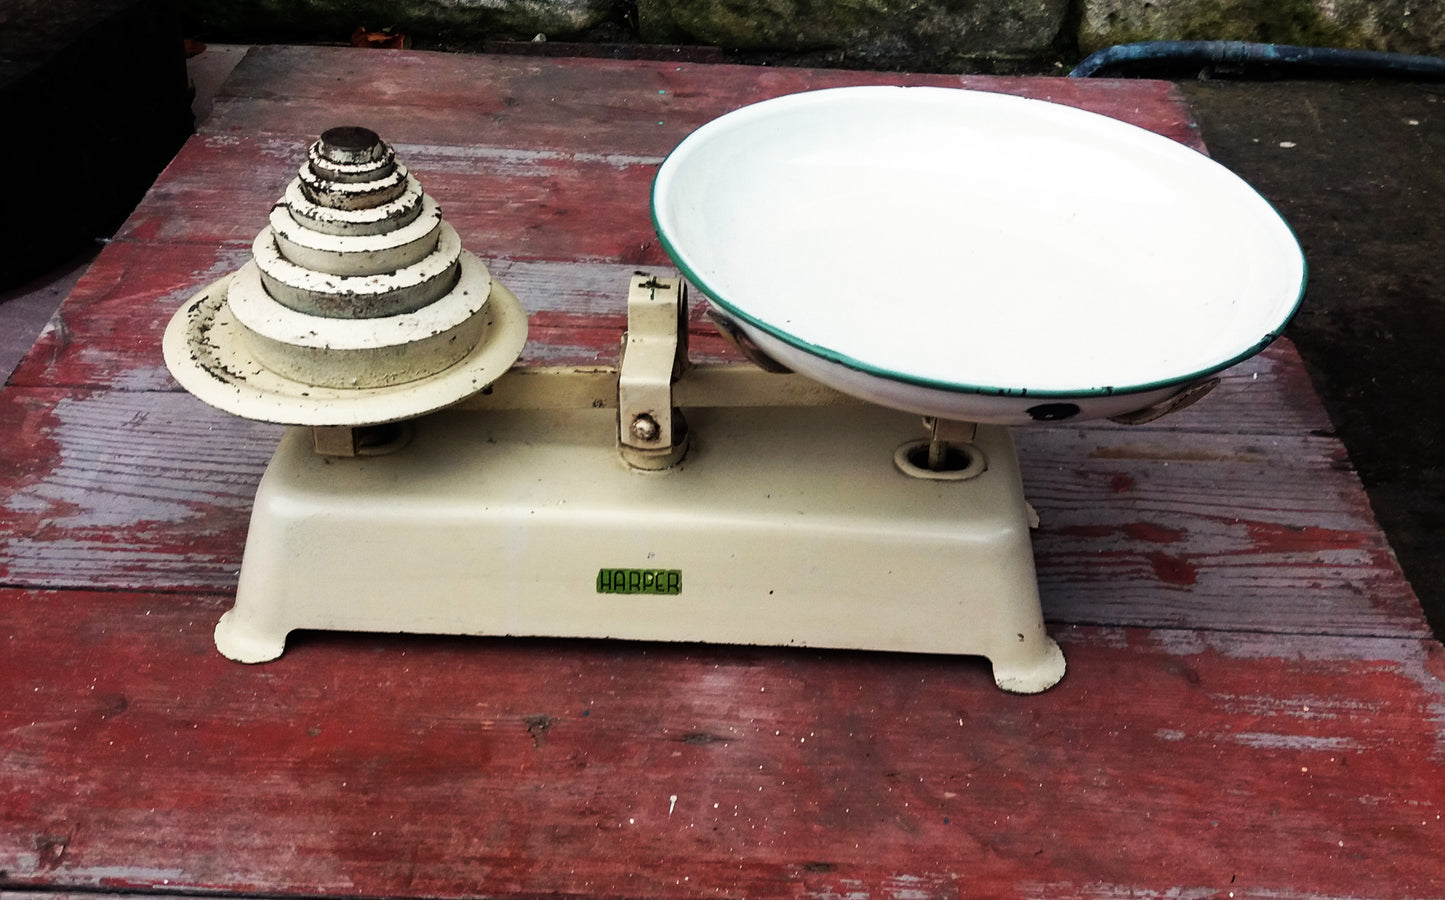 Vintage Harper weighing scales 